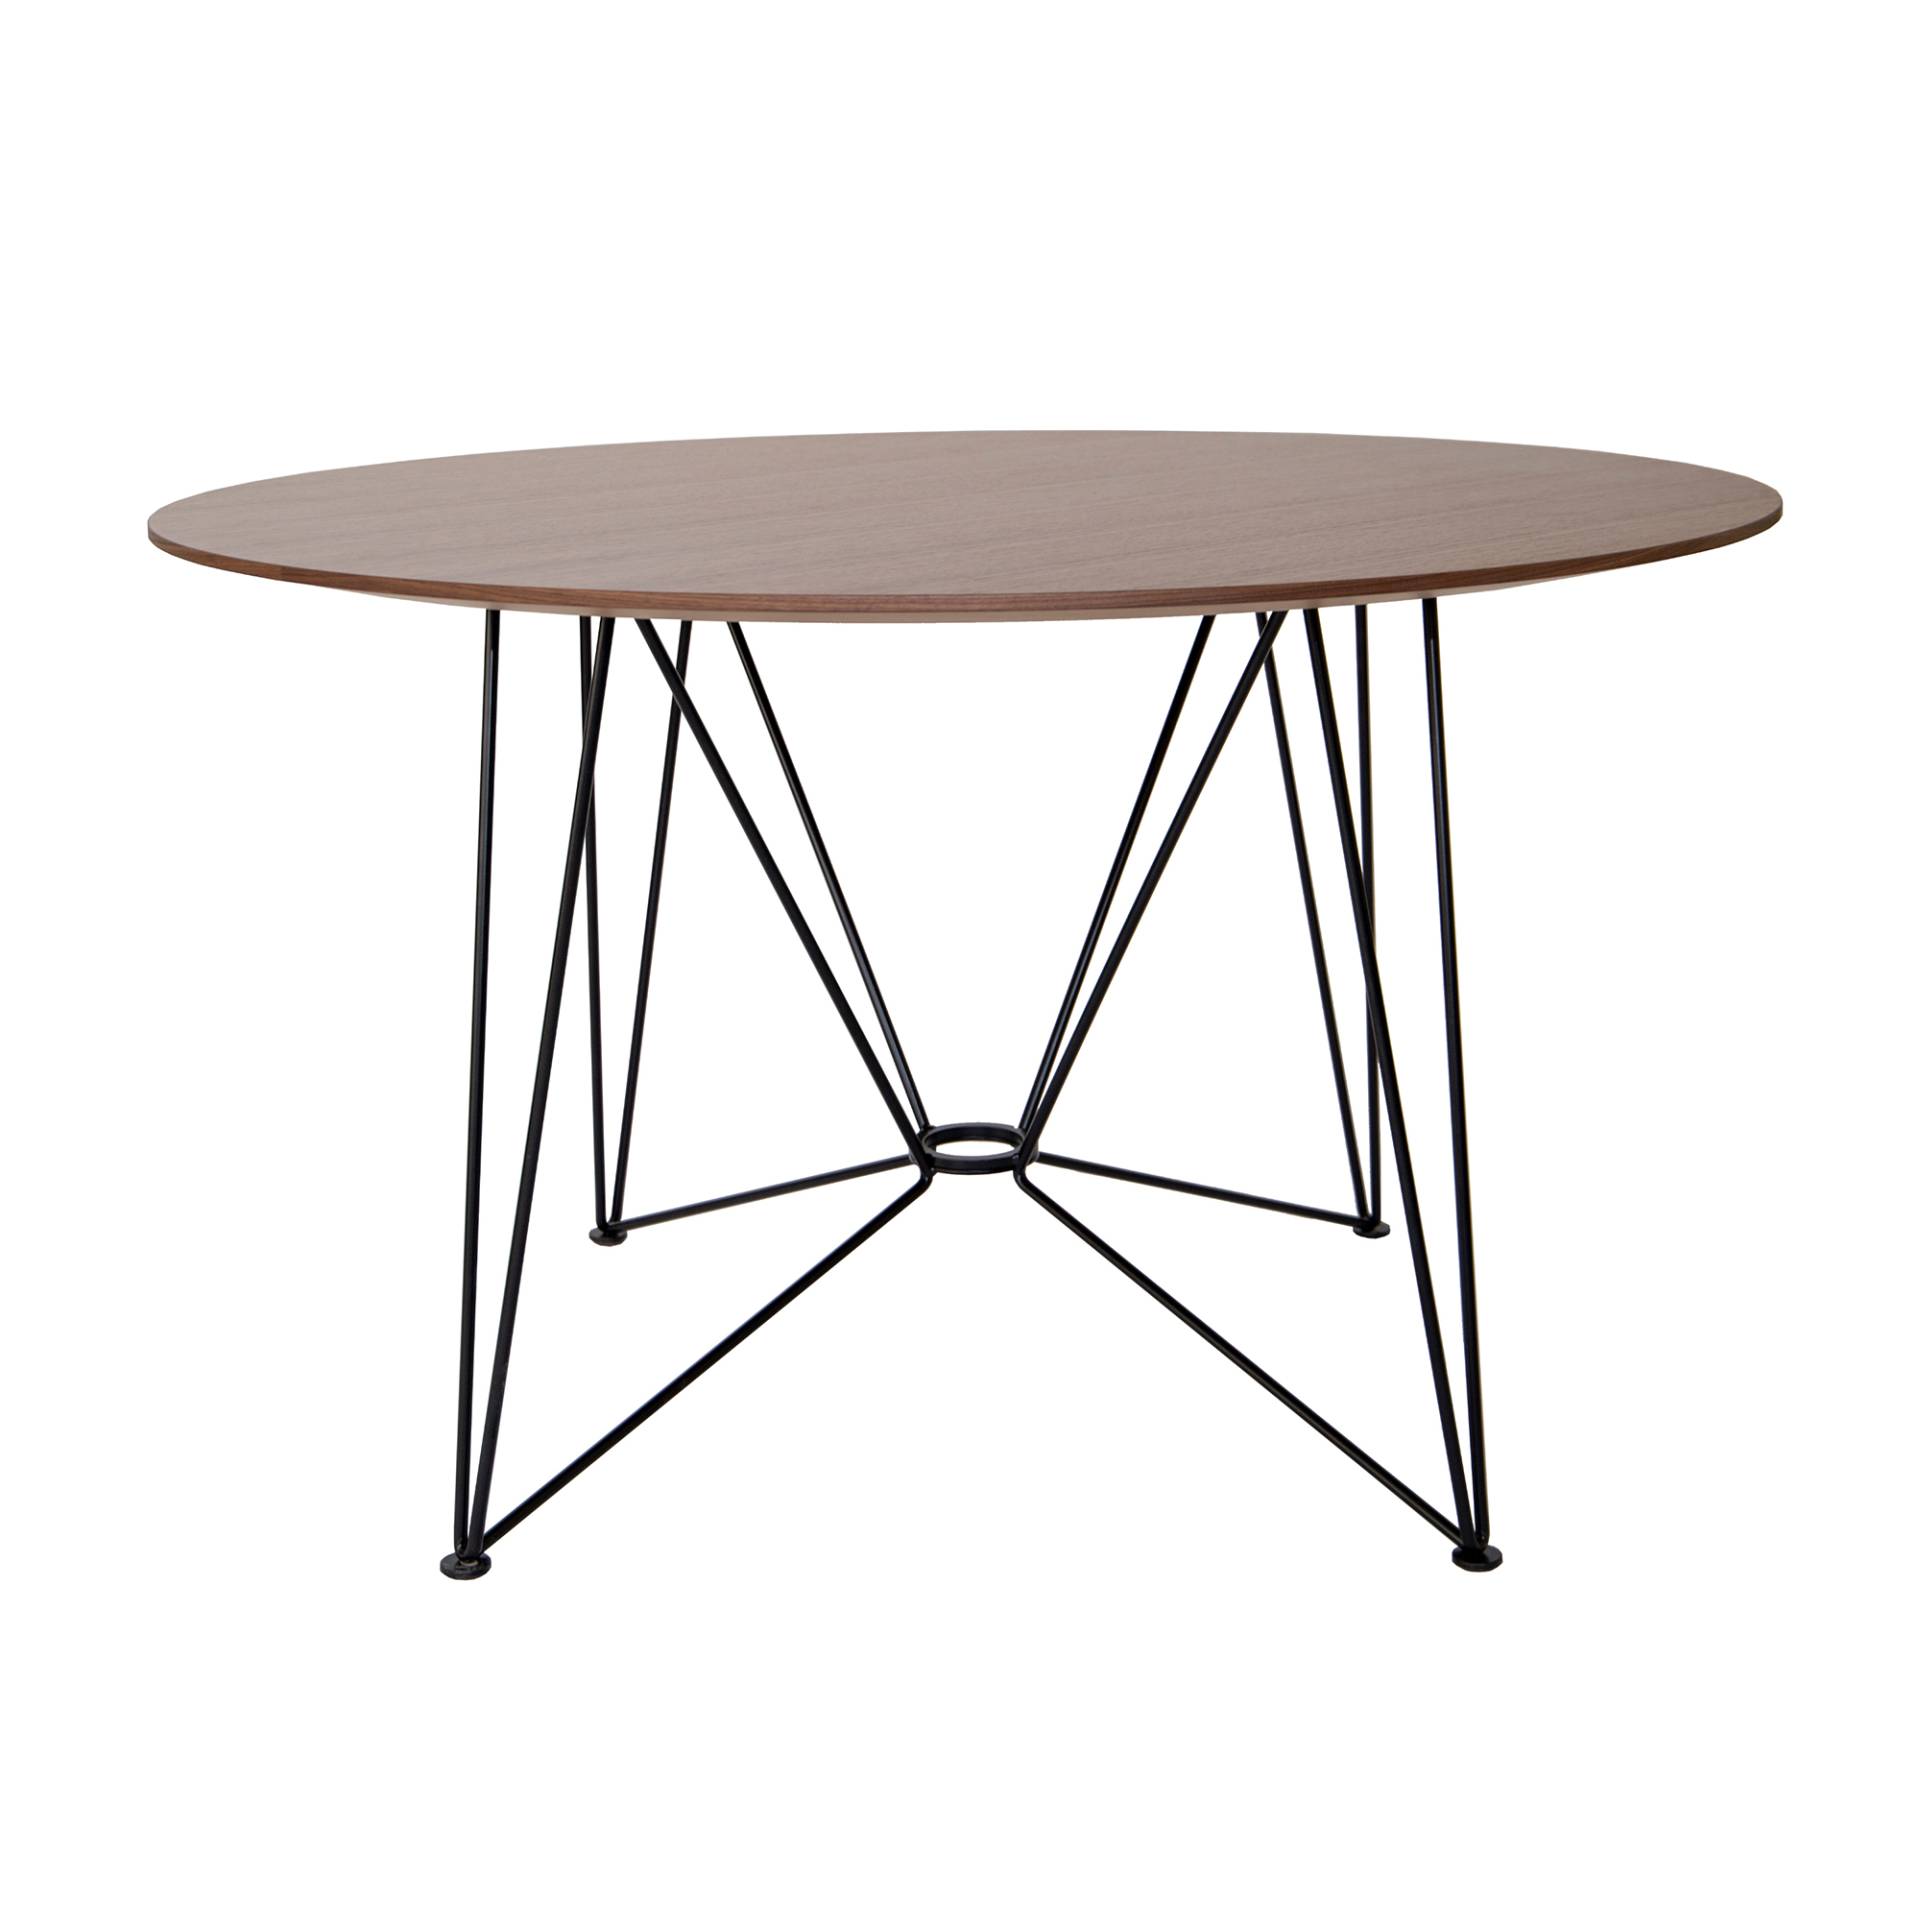 Acapulco Design - The Ring Table Esstisch Furnier Ø120cm - nussbaum, schwarz/Tischplatte Furnier/Gestell Stahl pulverbeschichtet/HxØ 74x120cm von Acapulco Design